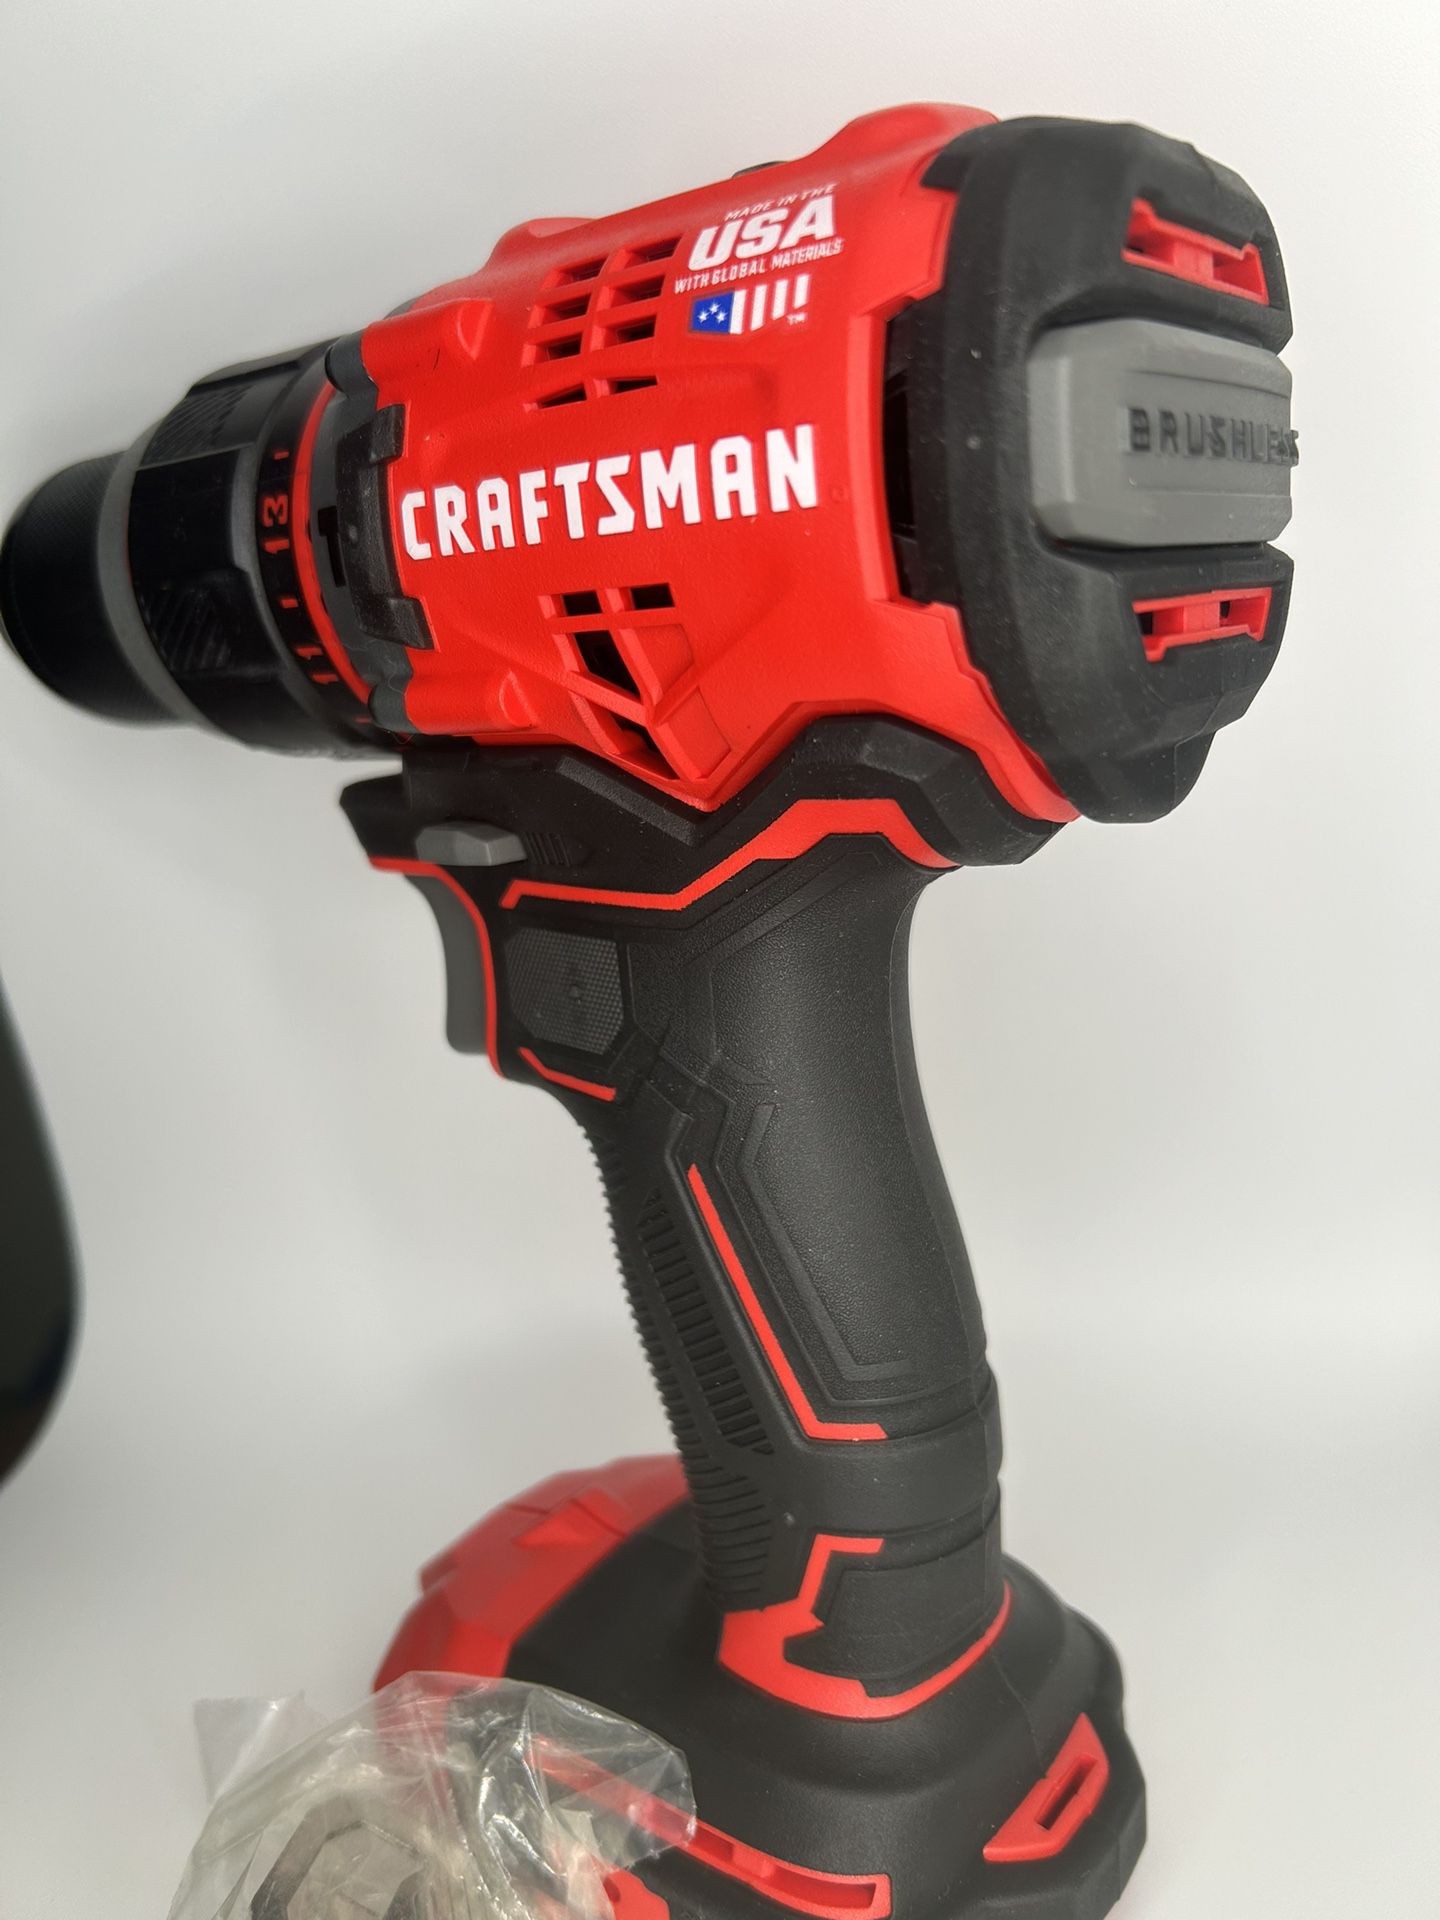 Craftsman. Hammer Drill Tool